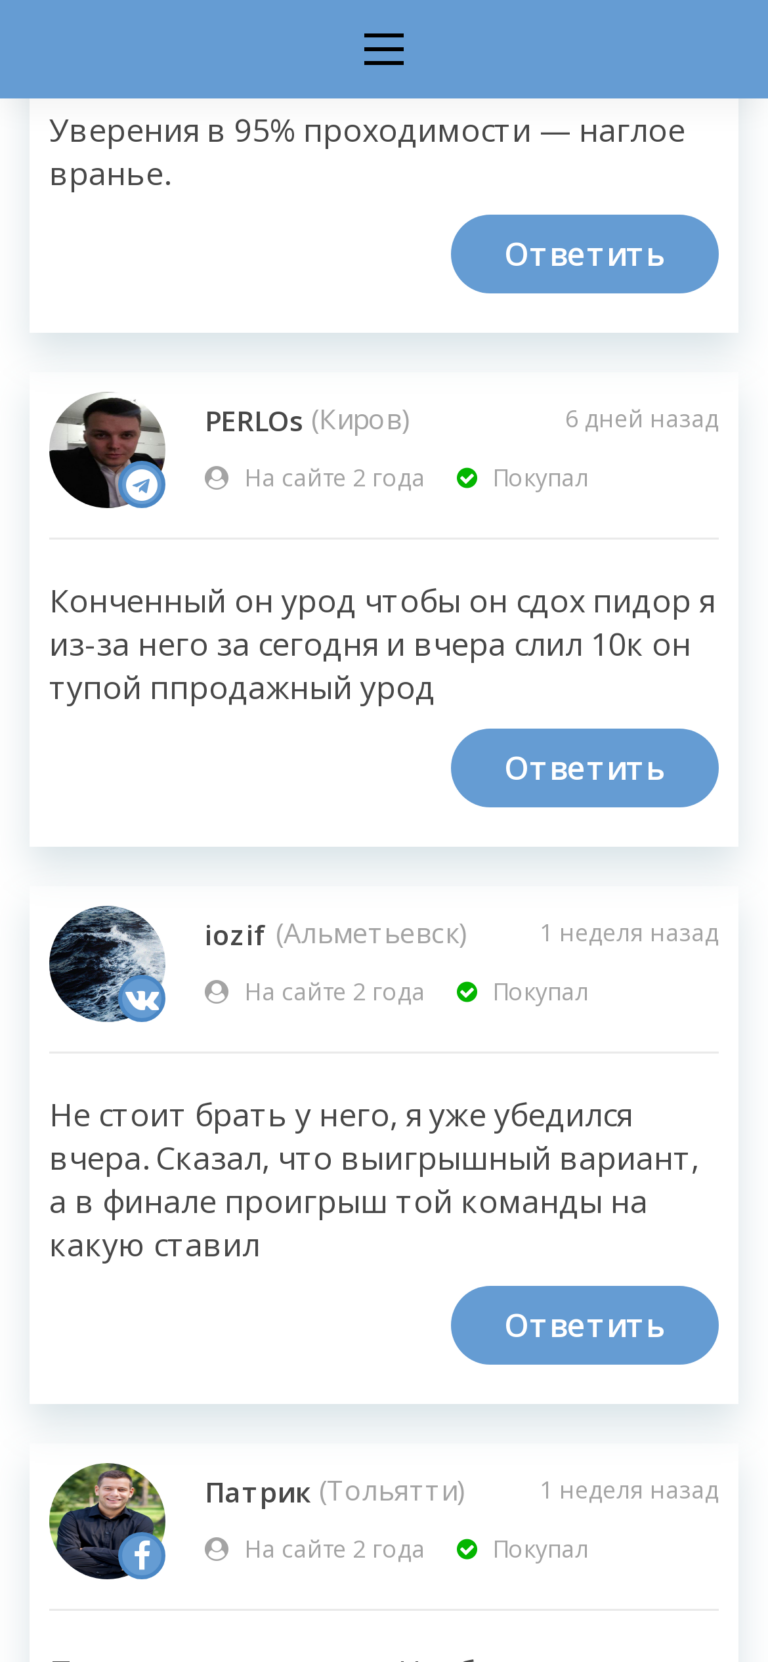 Василий Казанцев Договорные матчи отзывы каппер отзывы